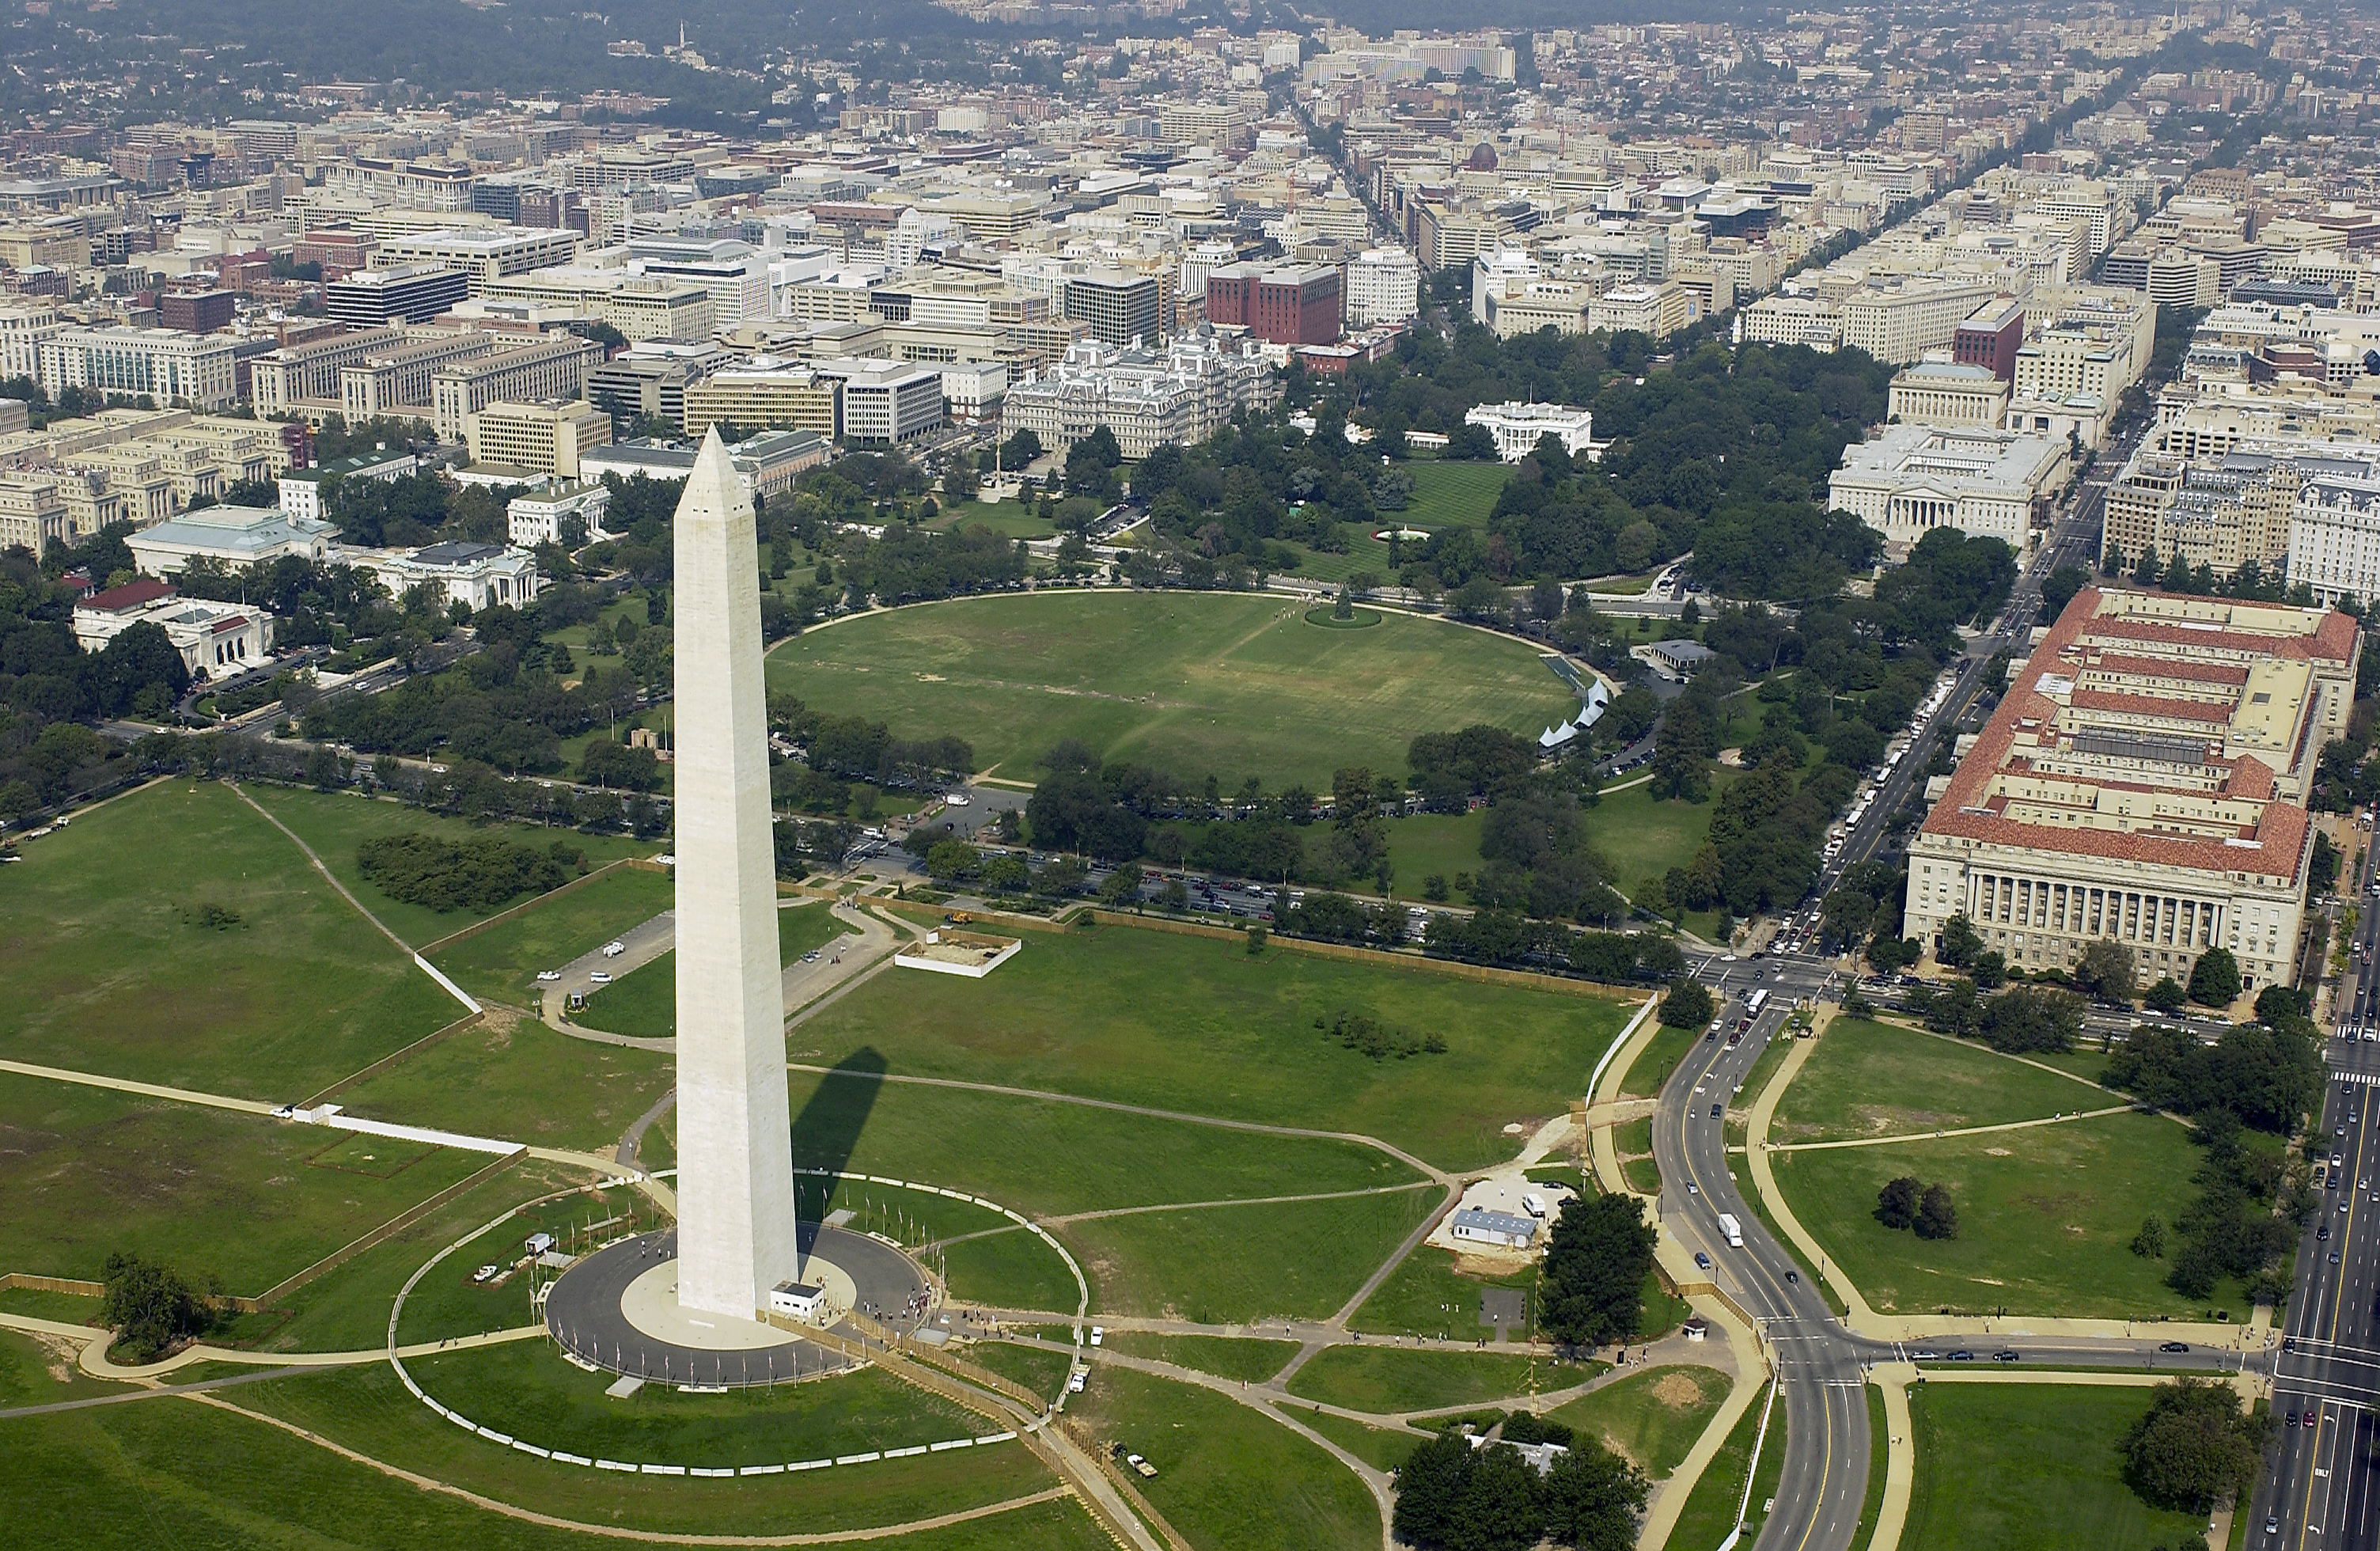 Washington, D.C. - Alemannische Wikipedia